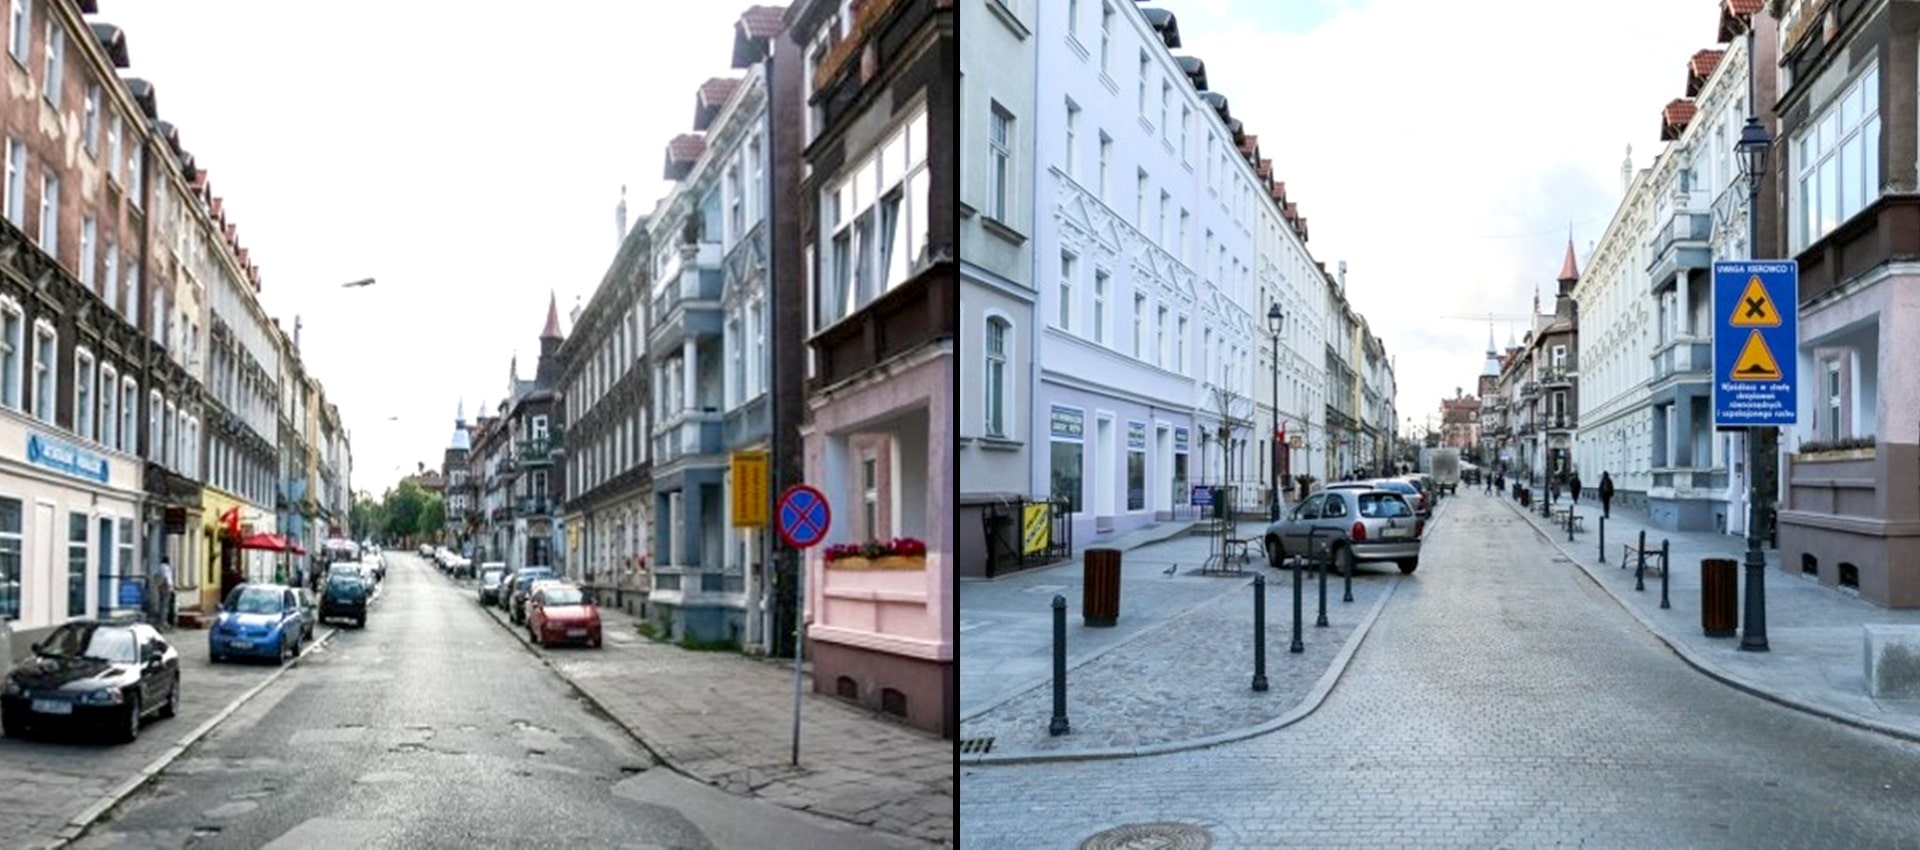 Dwa połączone ze sobą zdjęcia, na zdjęciu po lewej stronie przestrzeń przed remontem obejmująca ulicę z chodnikami po obu stronach i kamienicami, a po prawej stronie przestrzeń po przebudowie i remoncie obejmująca ulice, chodniki i kamienice